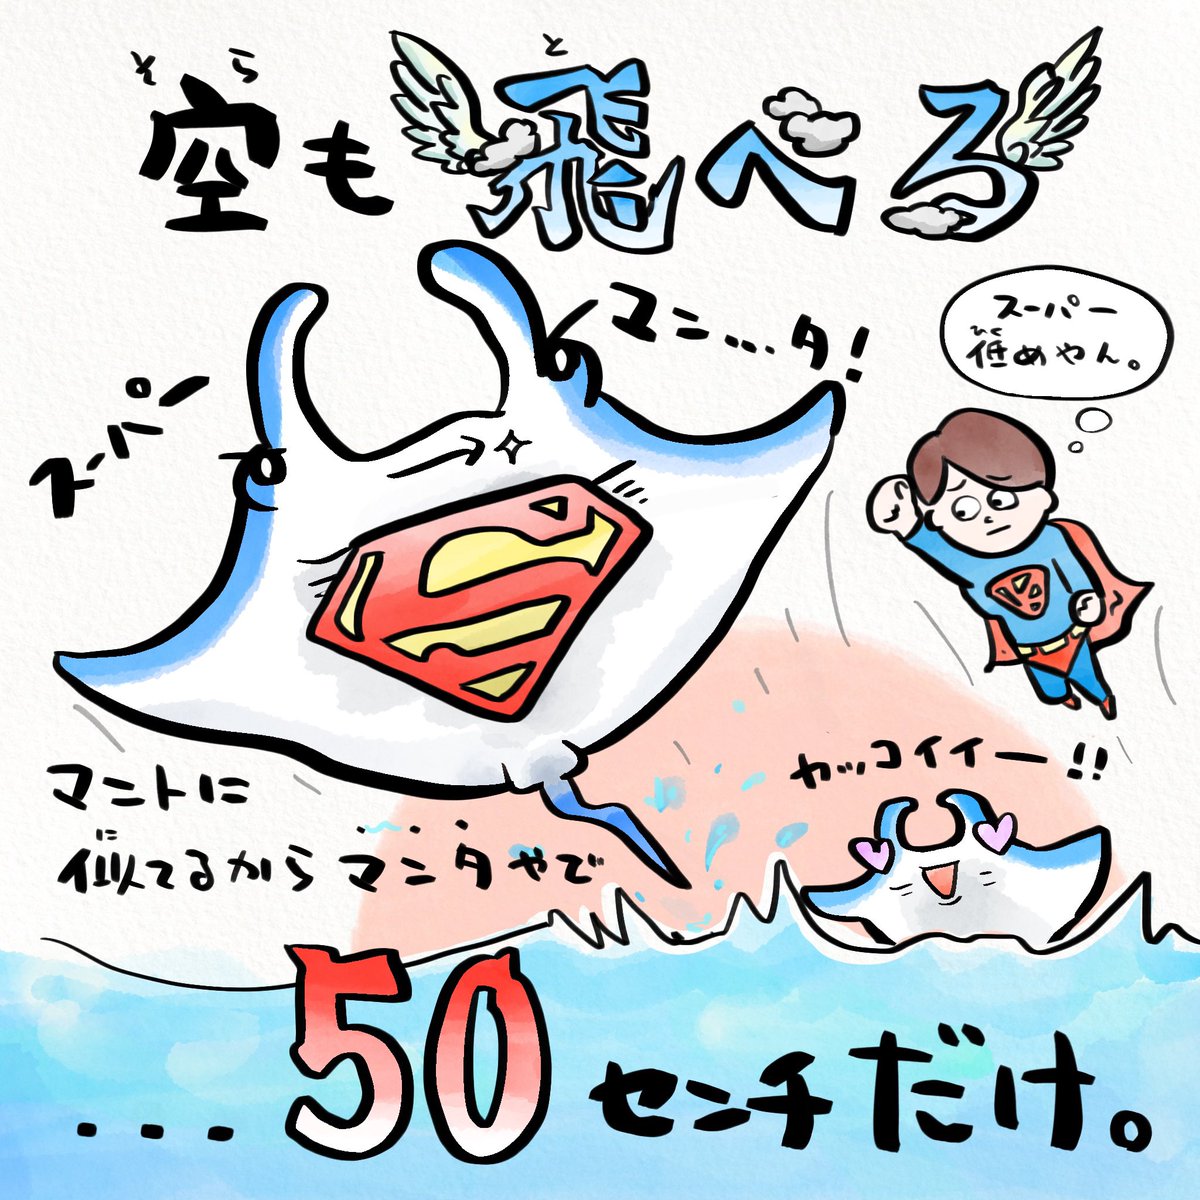 ヒーローの日、海にはスーパーマンがいる 